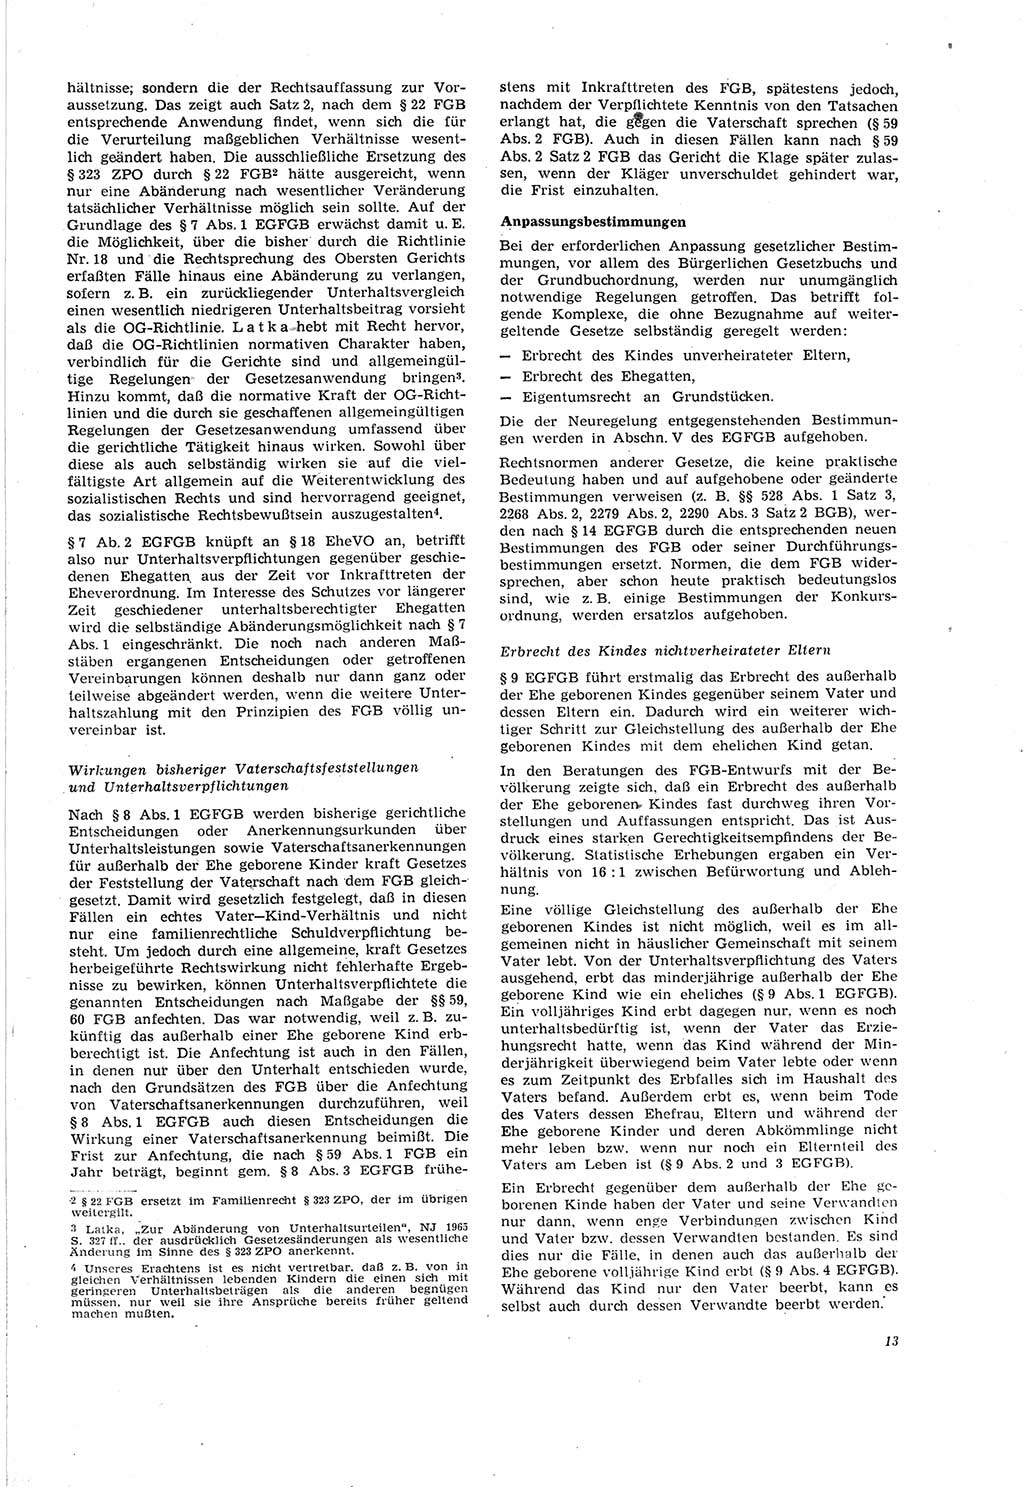 Neue Justiz (NJ), Zeitschrift für Recht und Rechtswissenschaft [Deutsche Demokratische Republik (DDR)], 20. Jahrgang 1966, Seite 13 (NJ DDR 1966, S. 13)